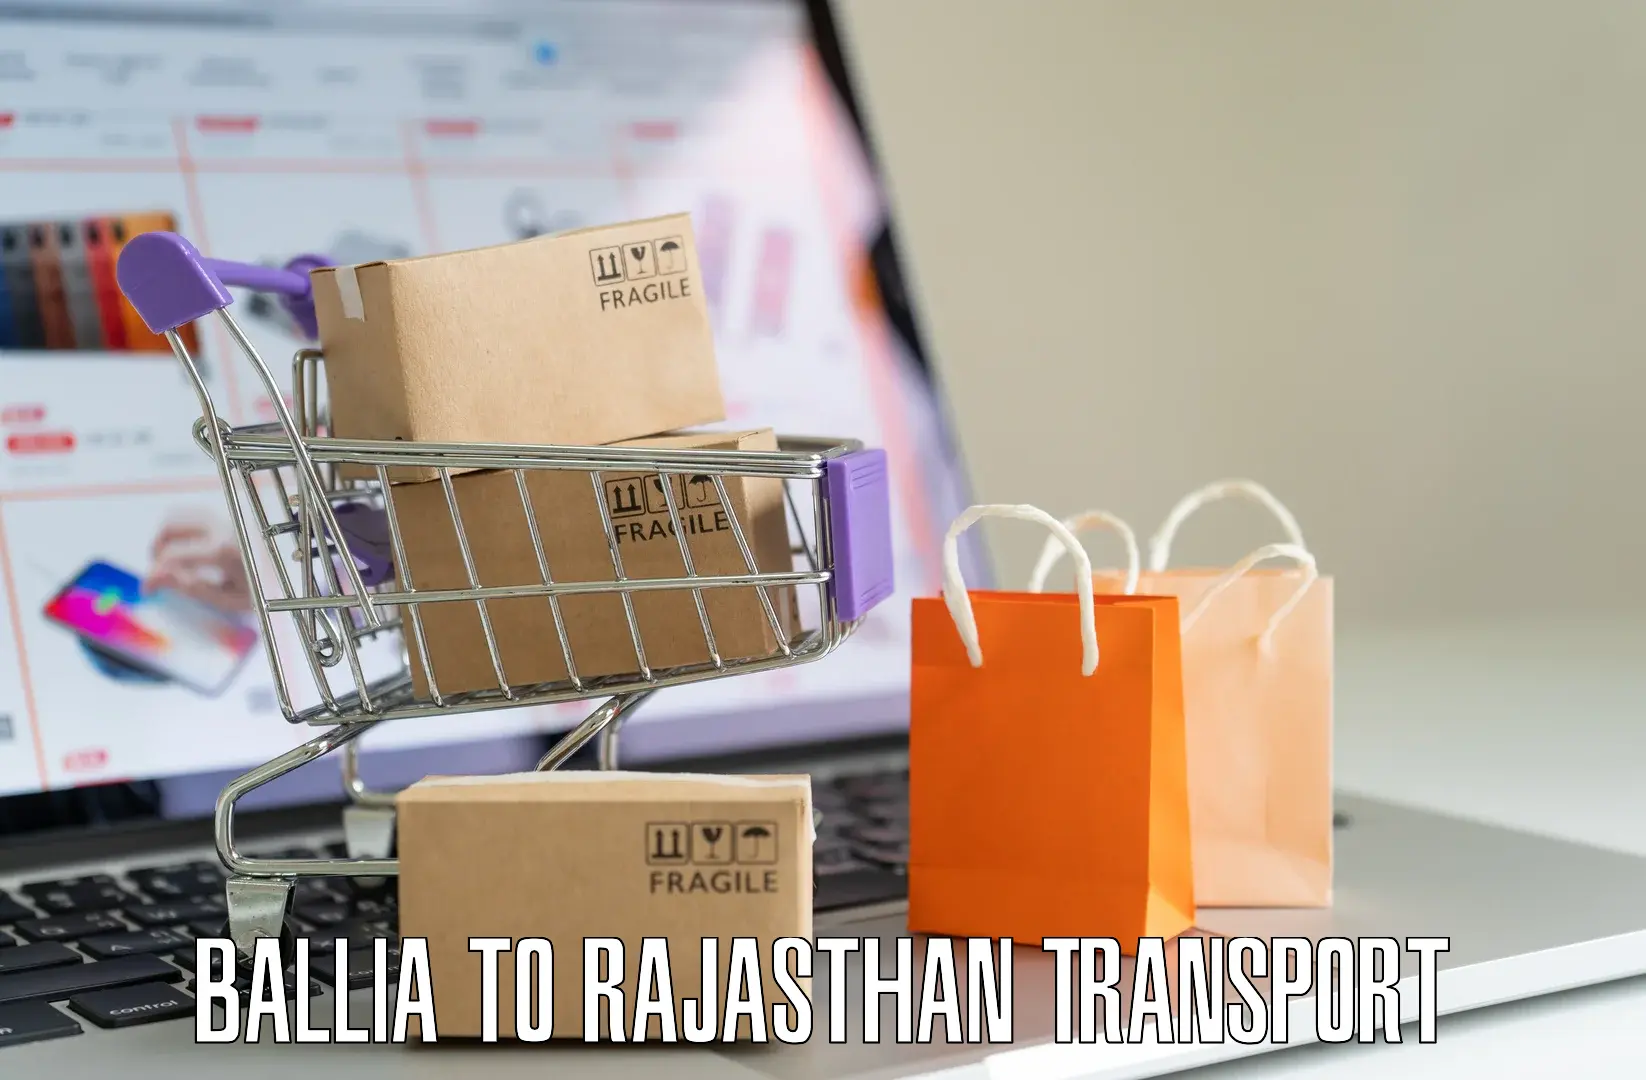 All India transport service Ballia to Ajmer